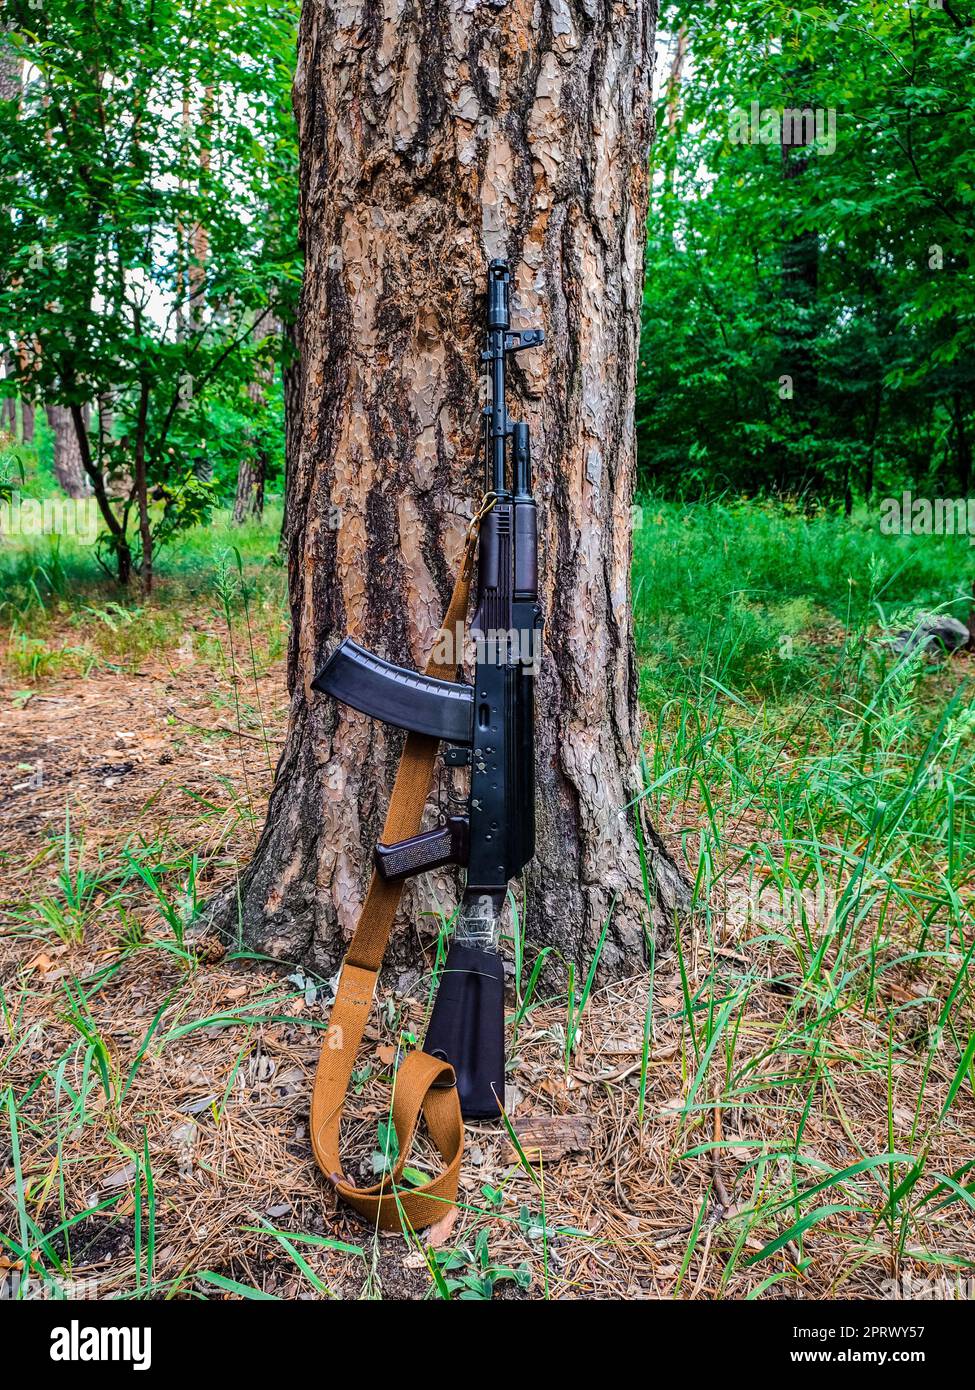 Small arms automatic weapon Kalashnikov. Stock Photo